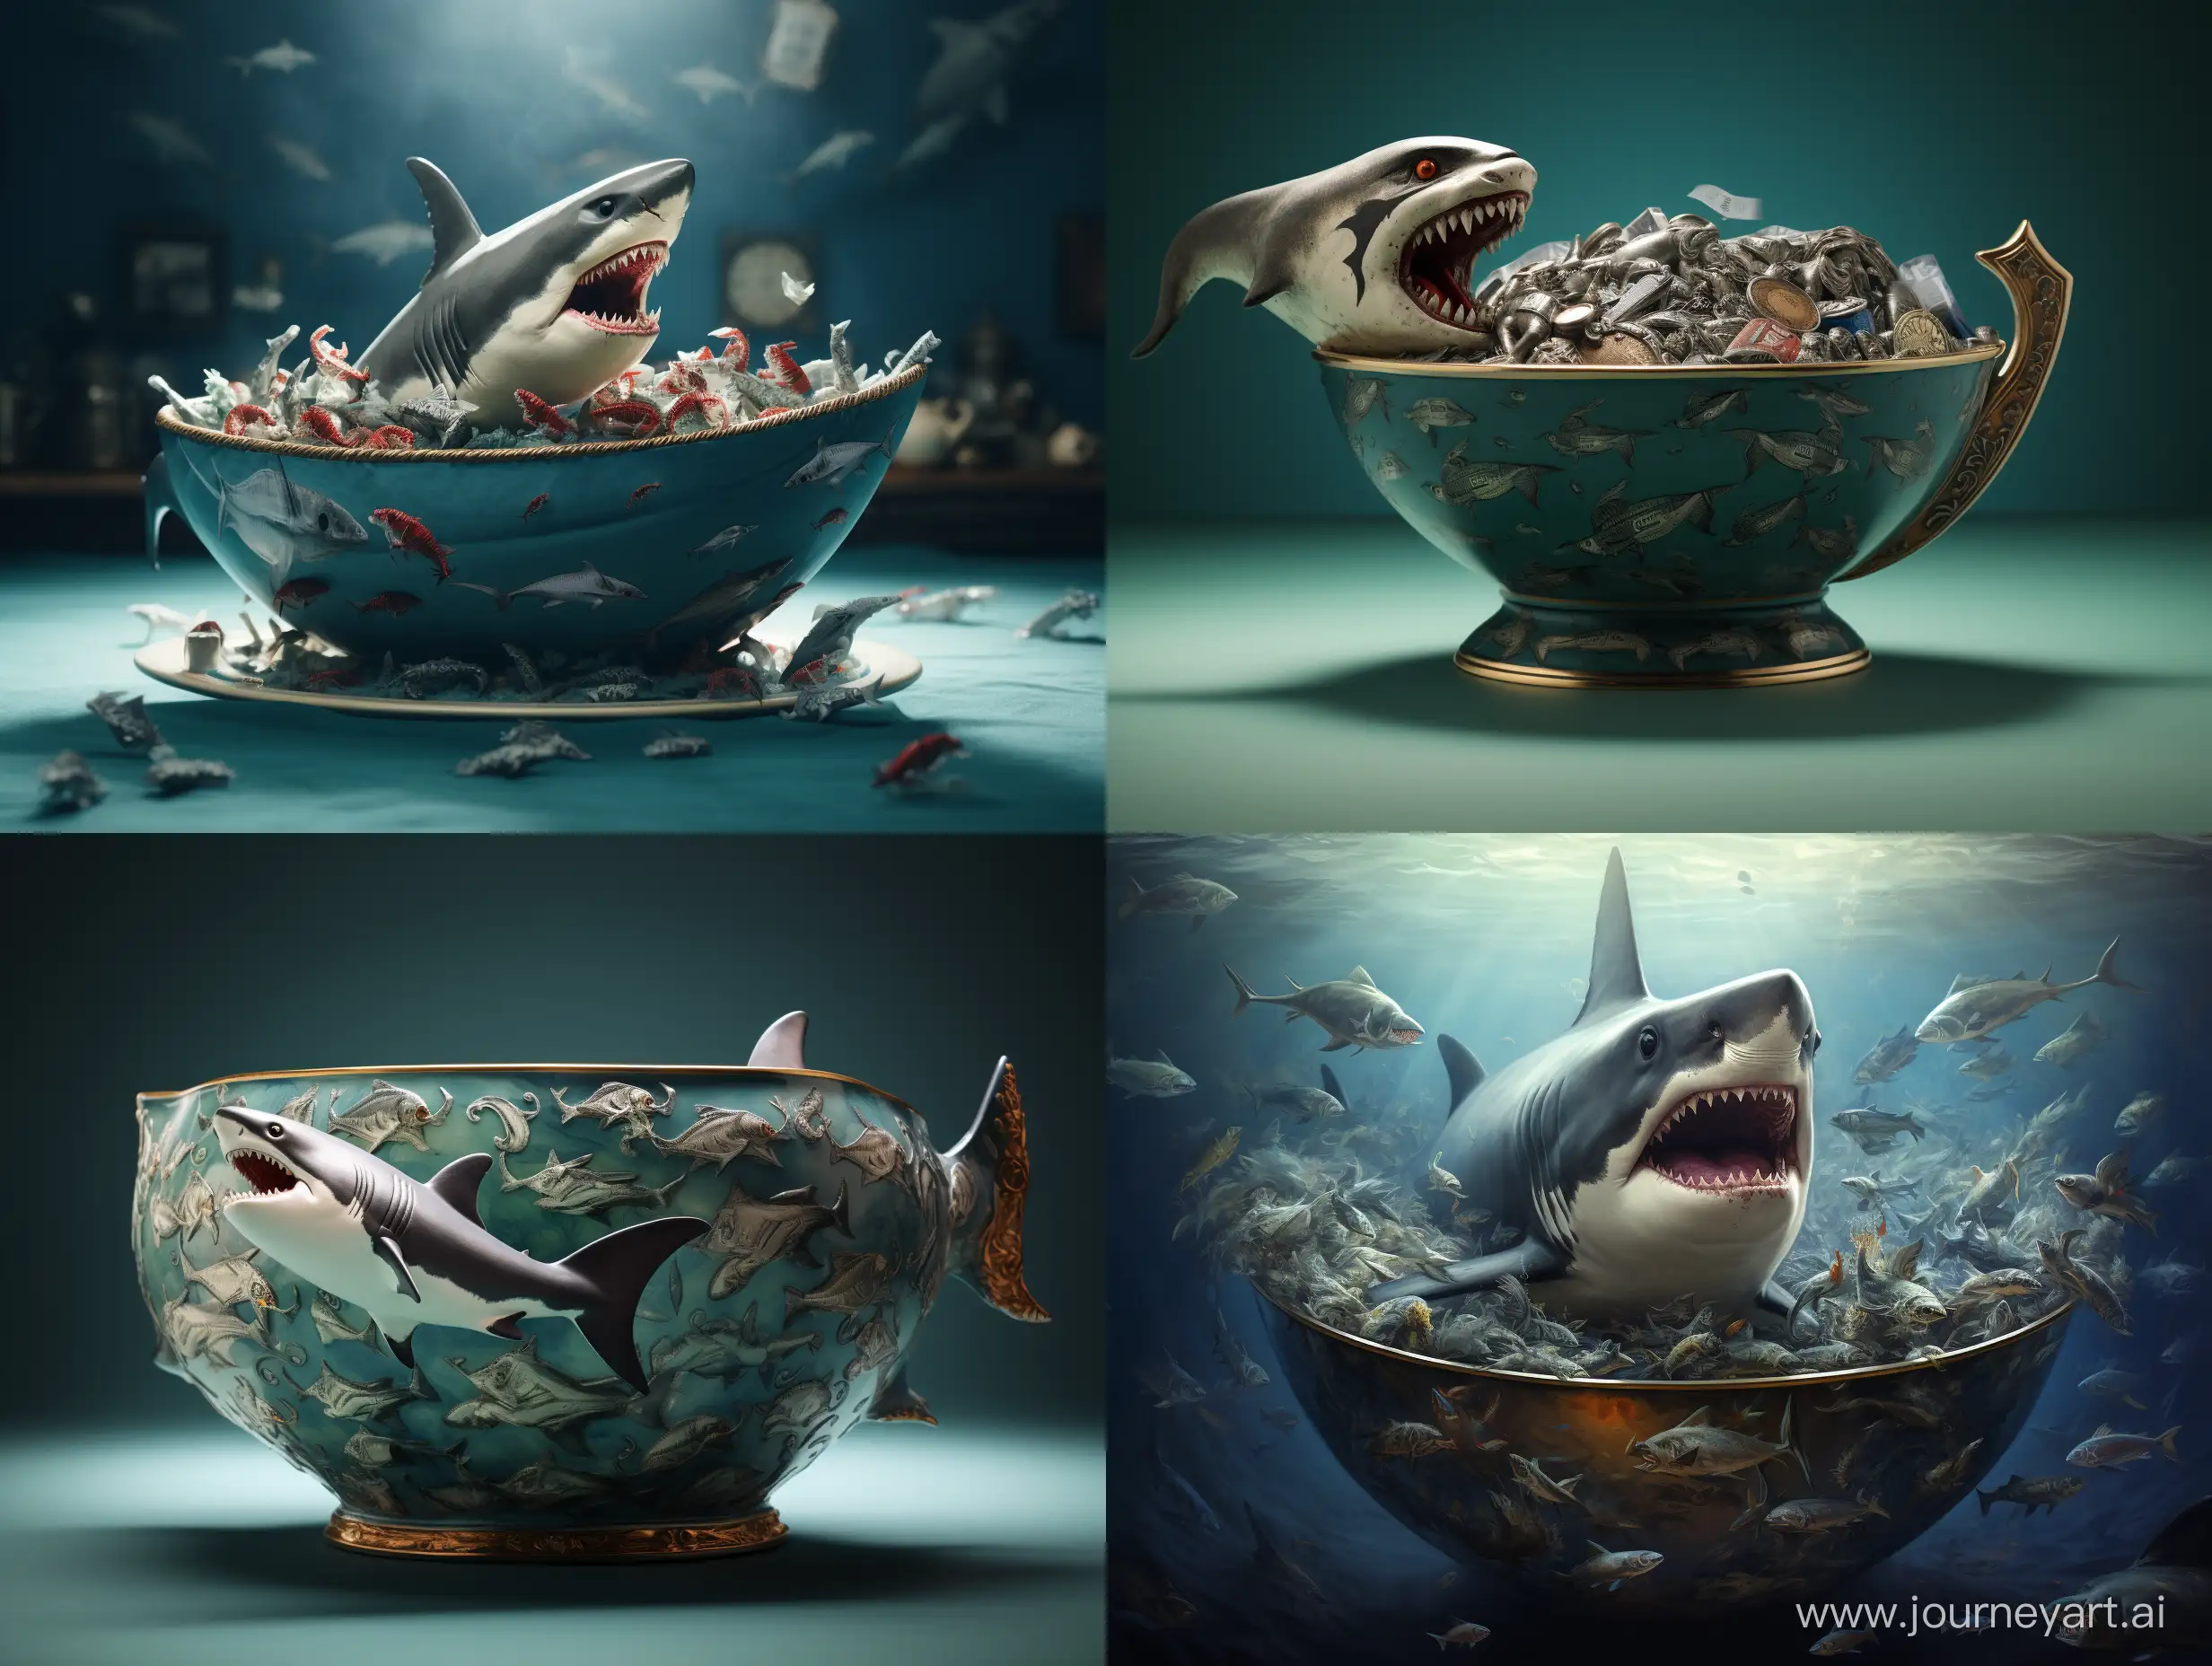 the shark bowl